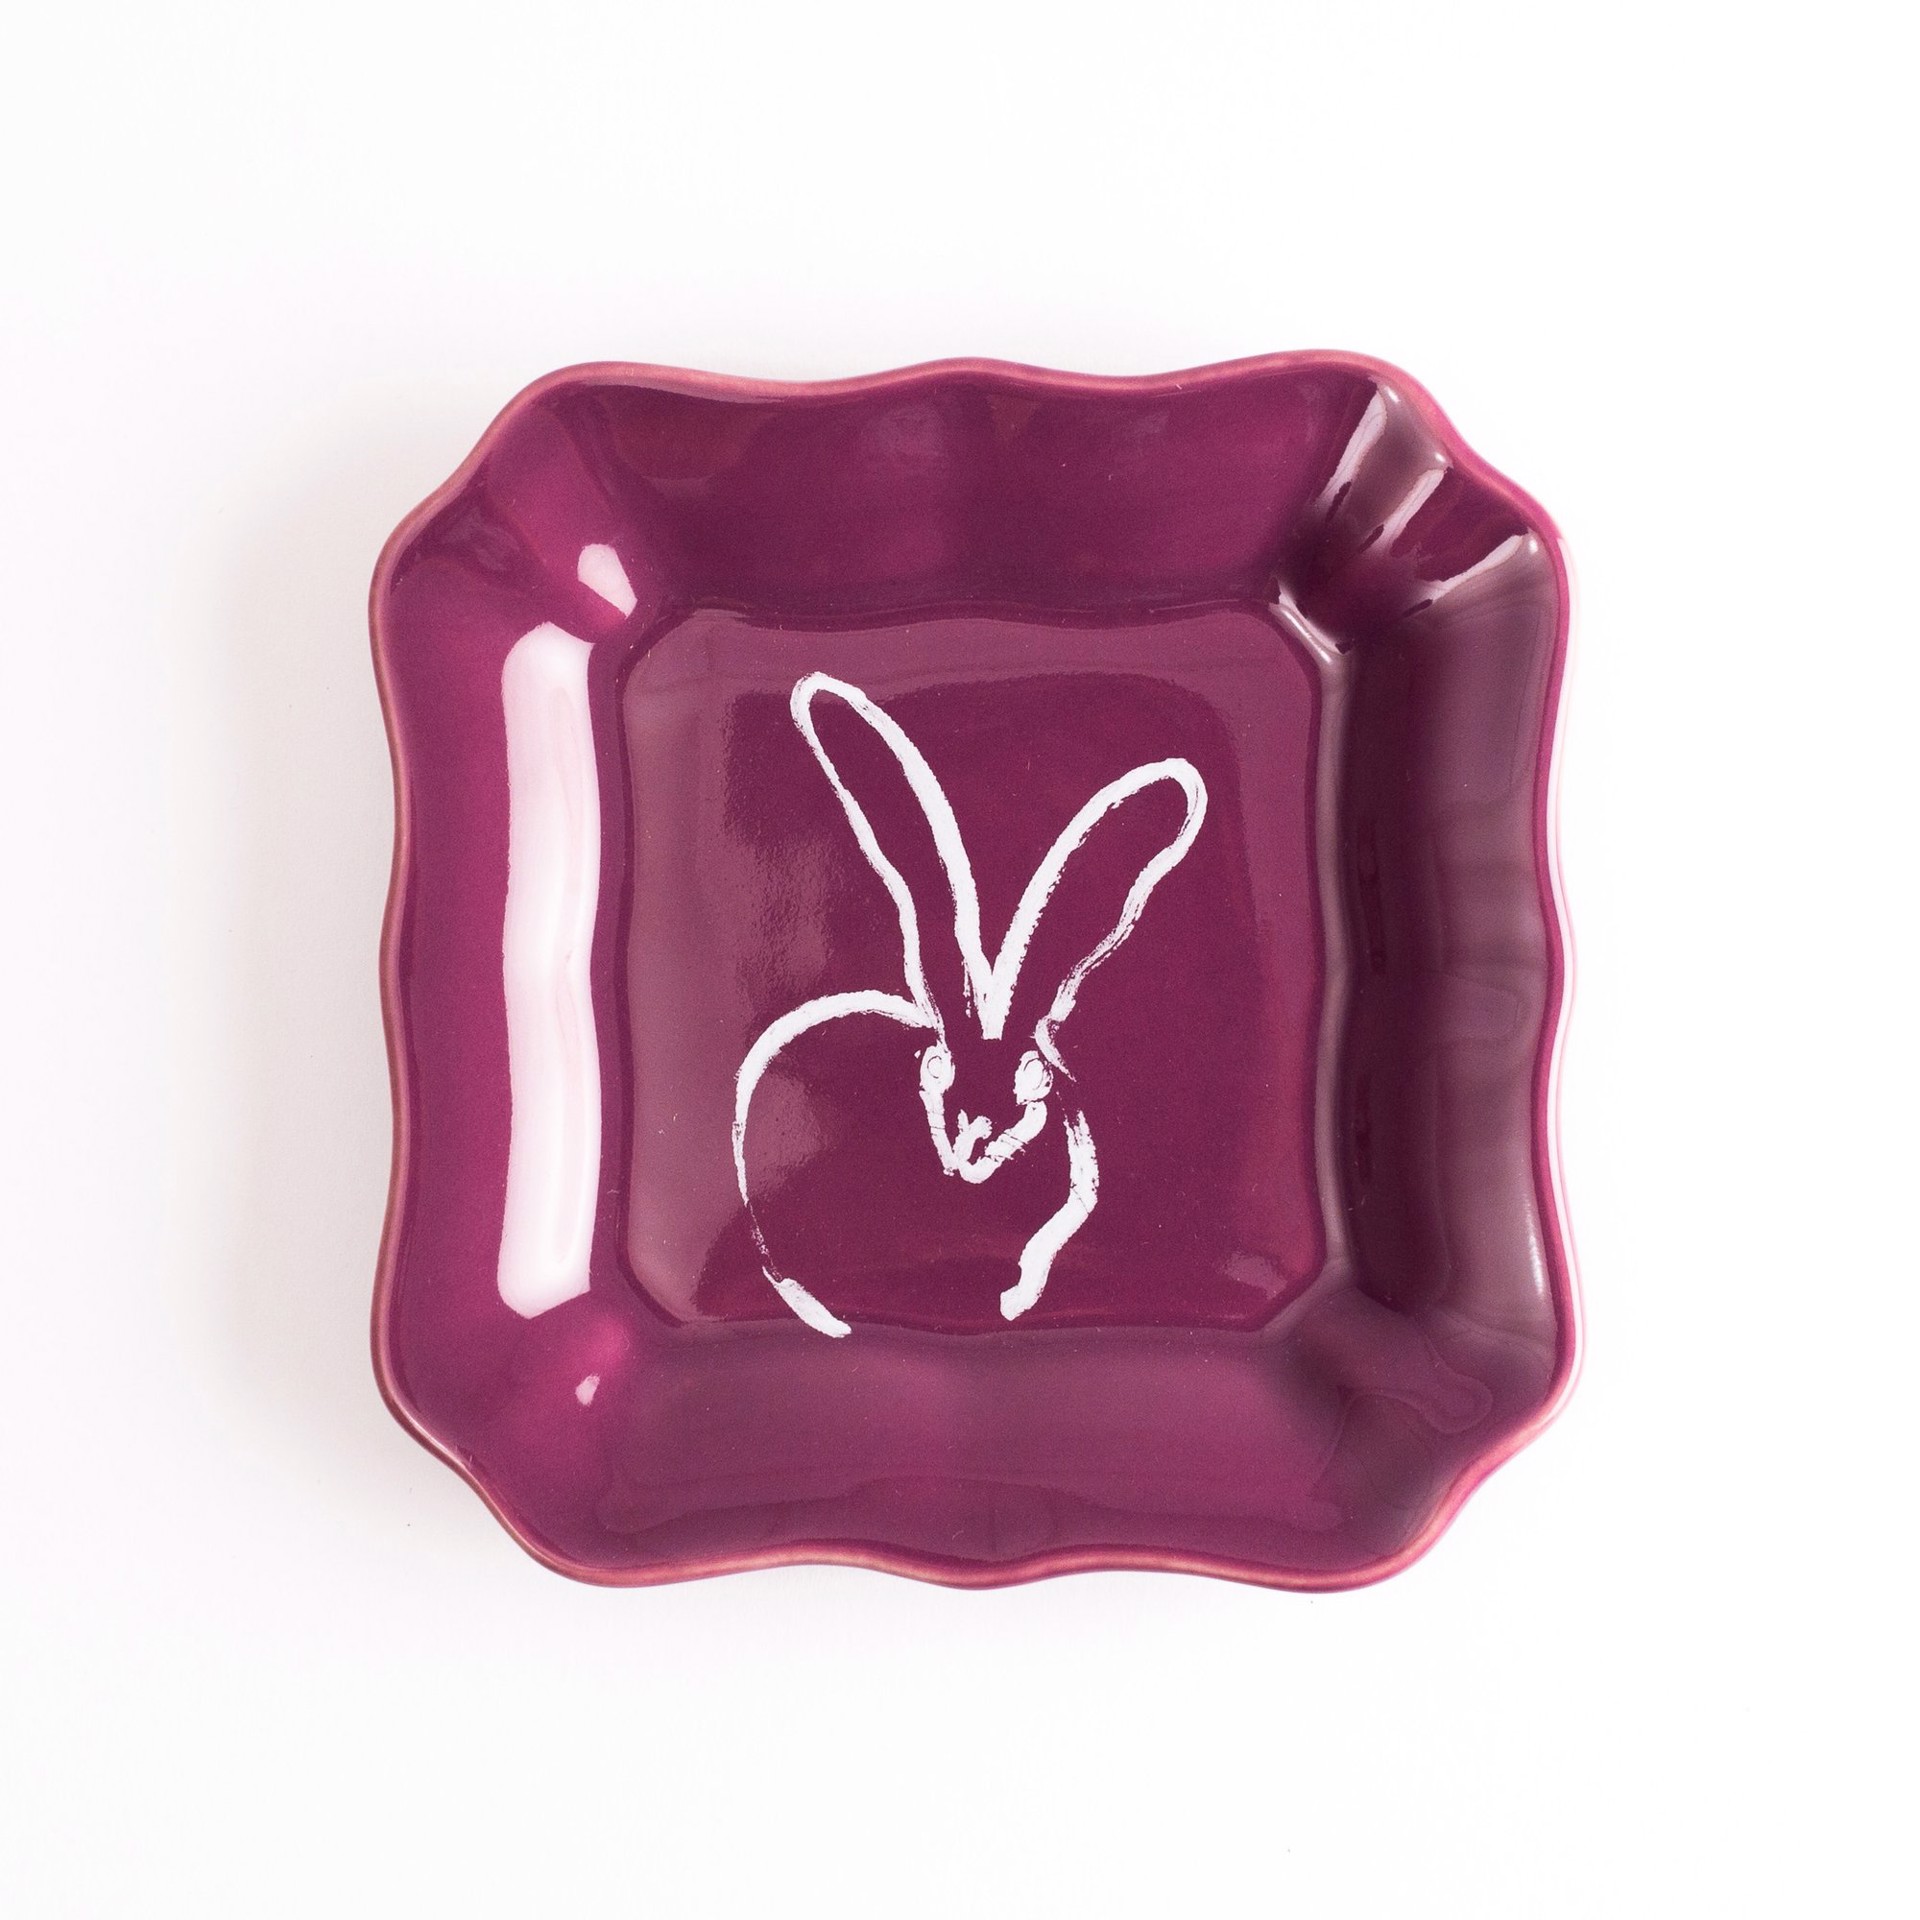 Bunny Portrait Plate - Aubergine by Hunt Slonem (Hop Up Shop)